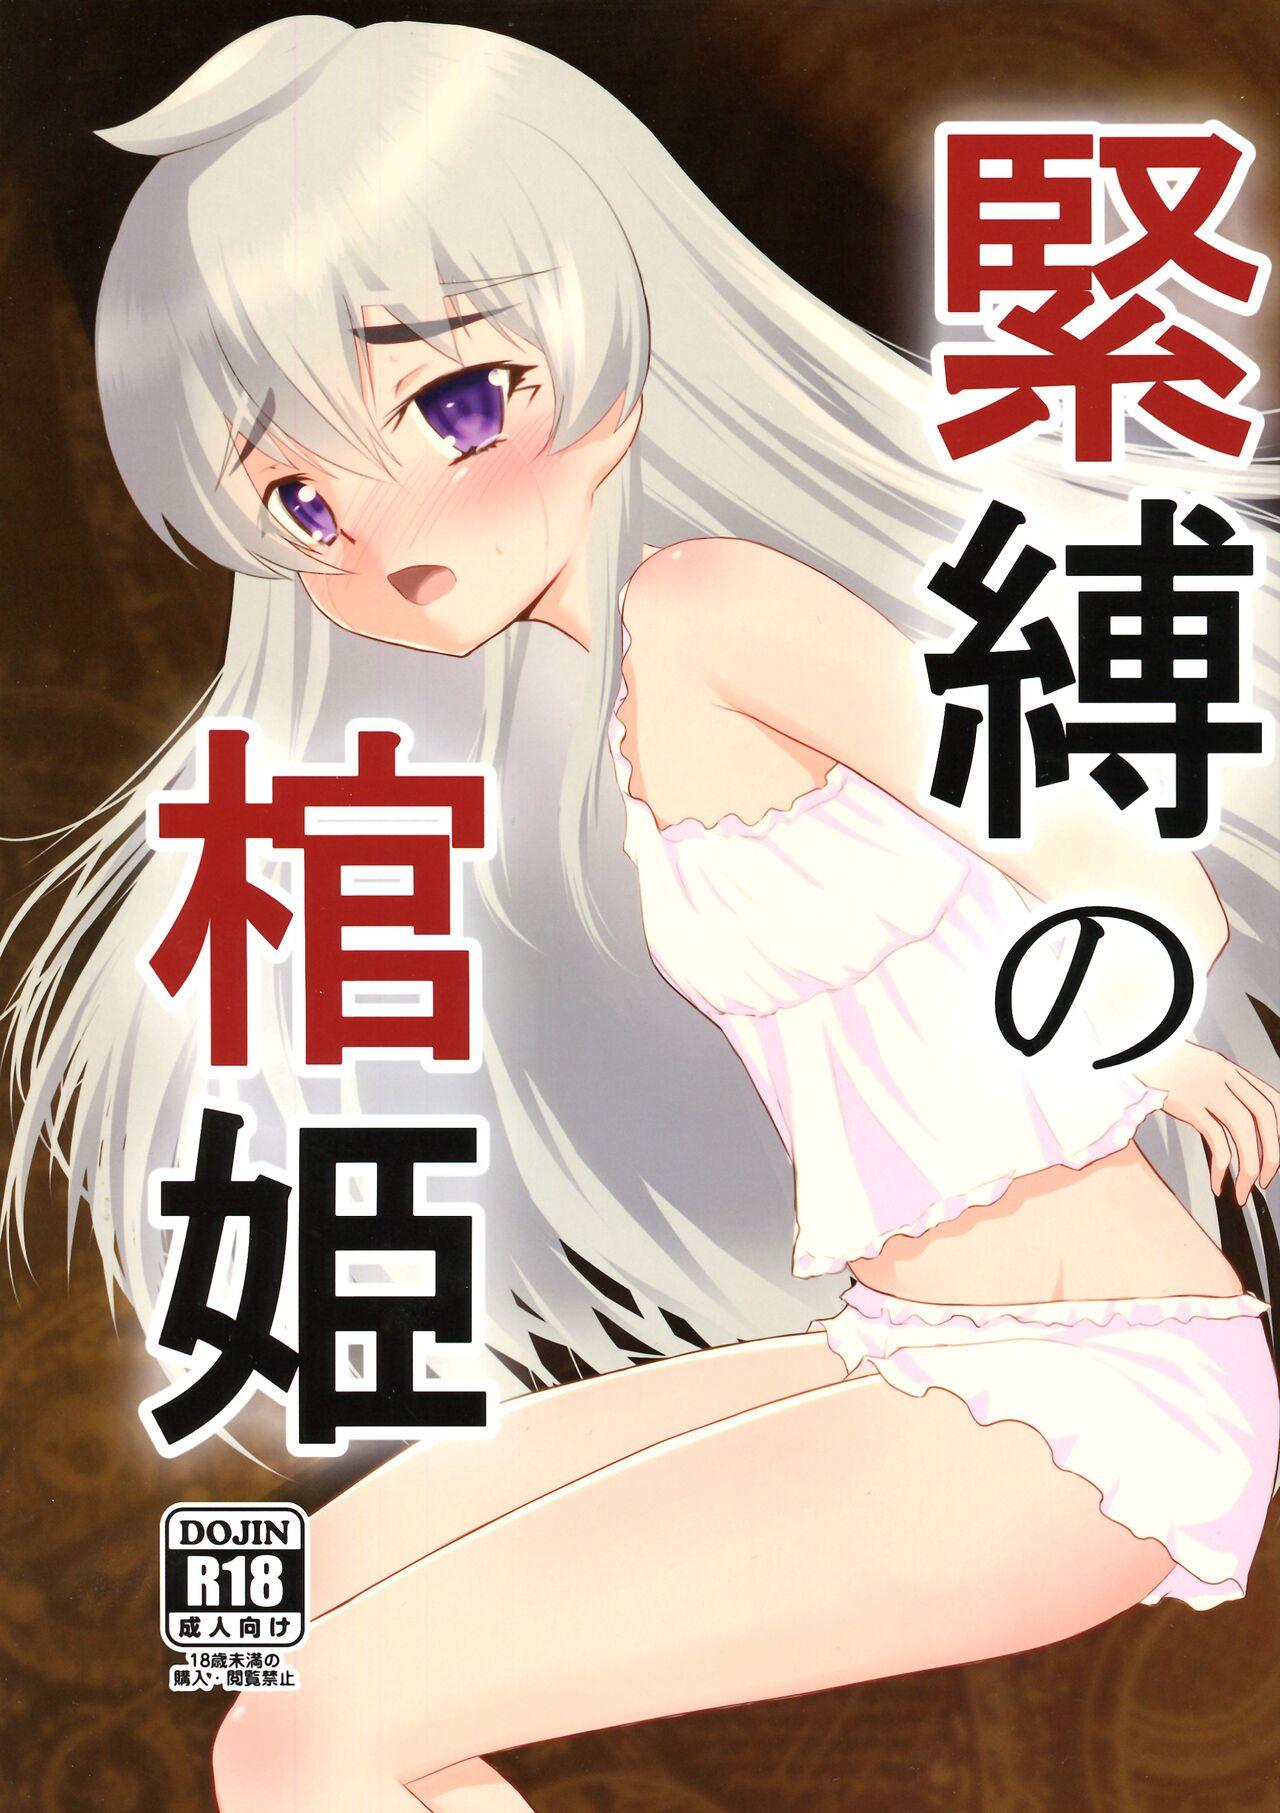 Penis Kinbaku no Hitsugi | Binded Coffin Princess - Hitsugi no chaika Stretch - Picture 1